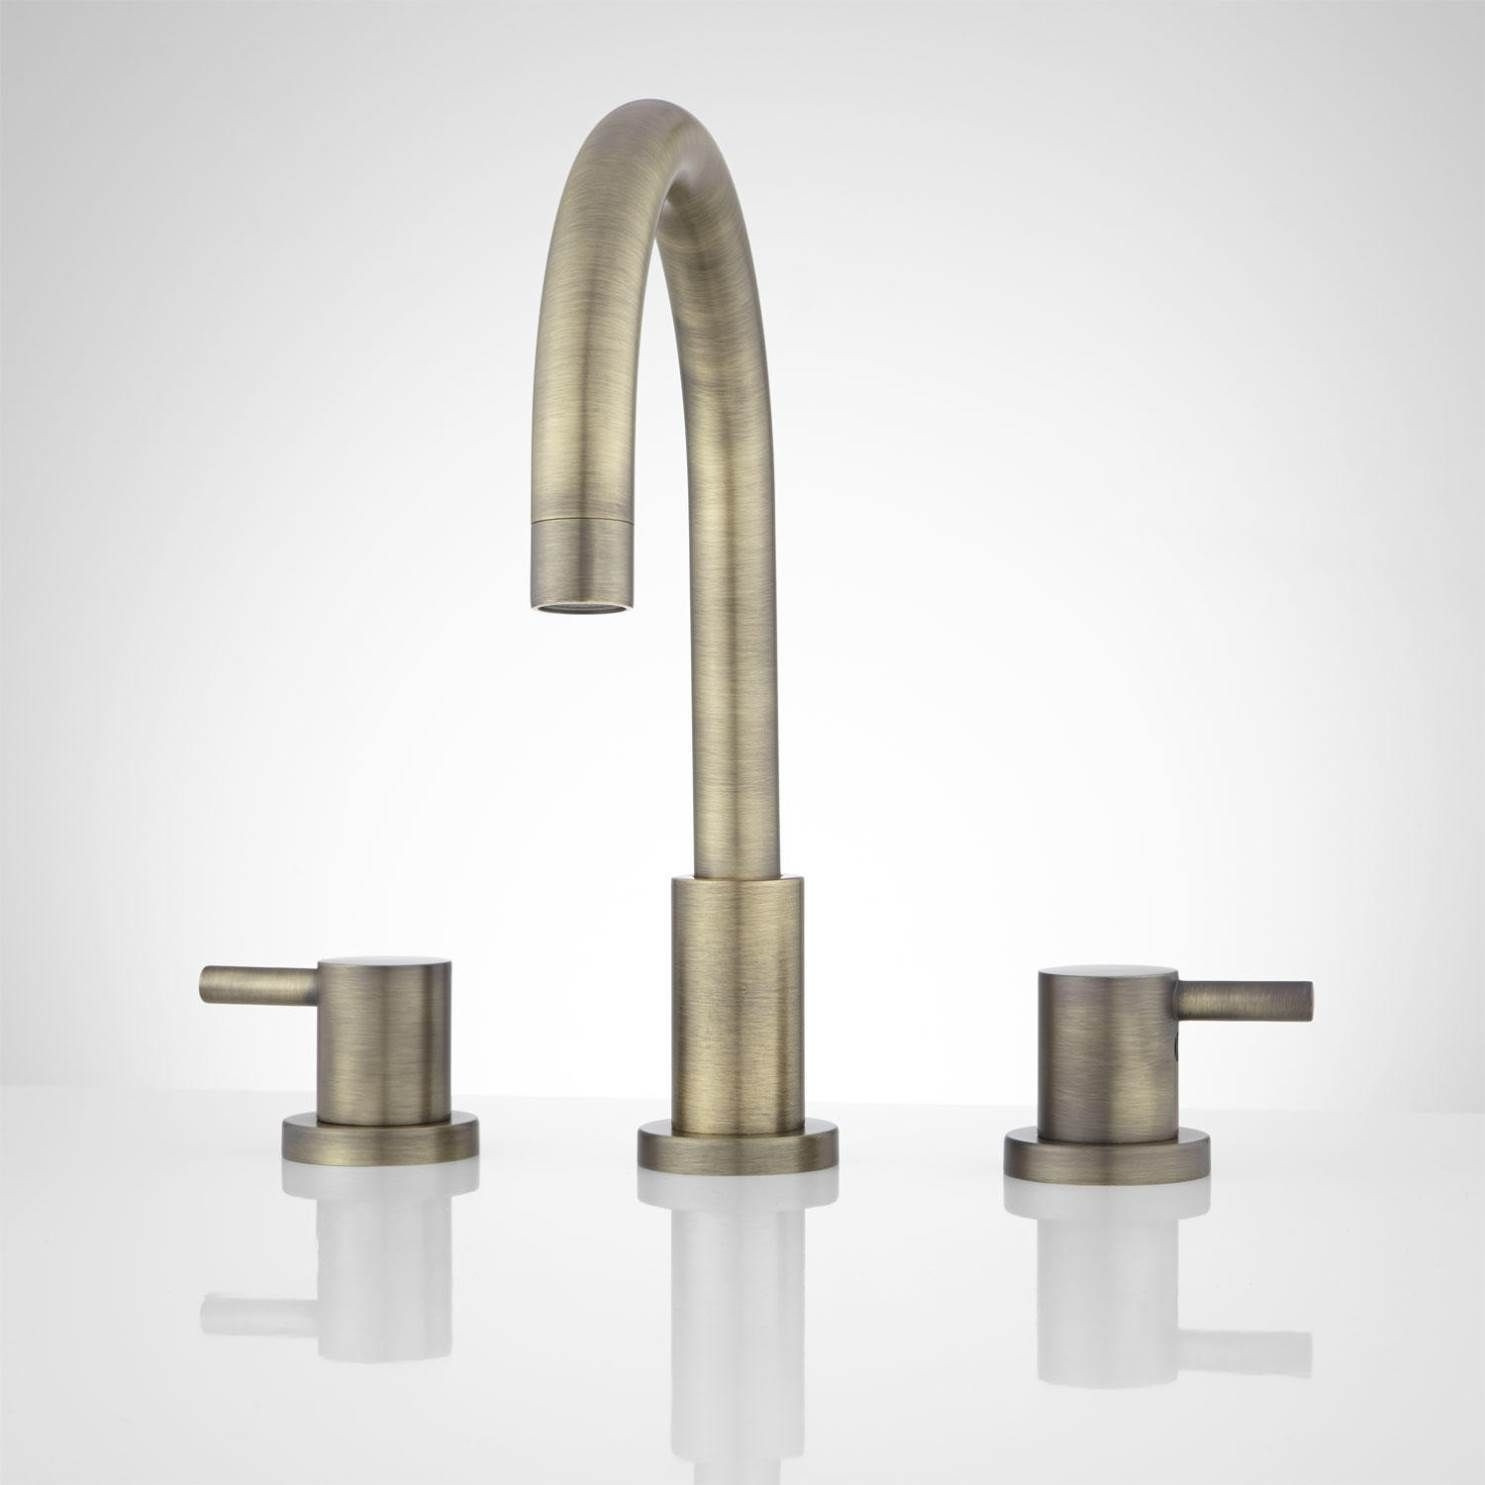 Moen Brass Bathroom Faucets
 Moen Antique Brass Faucets